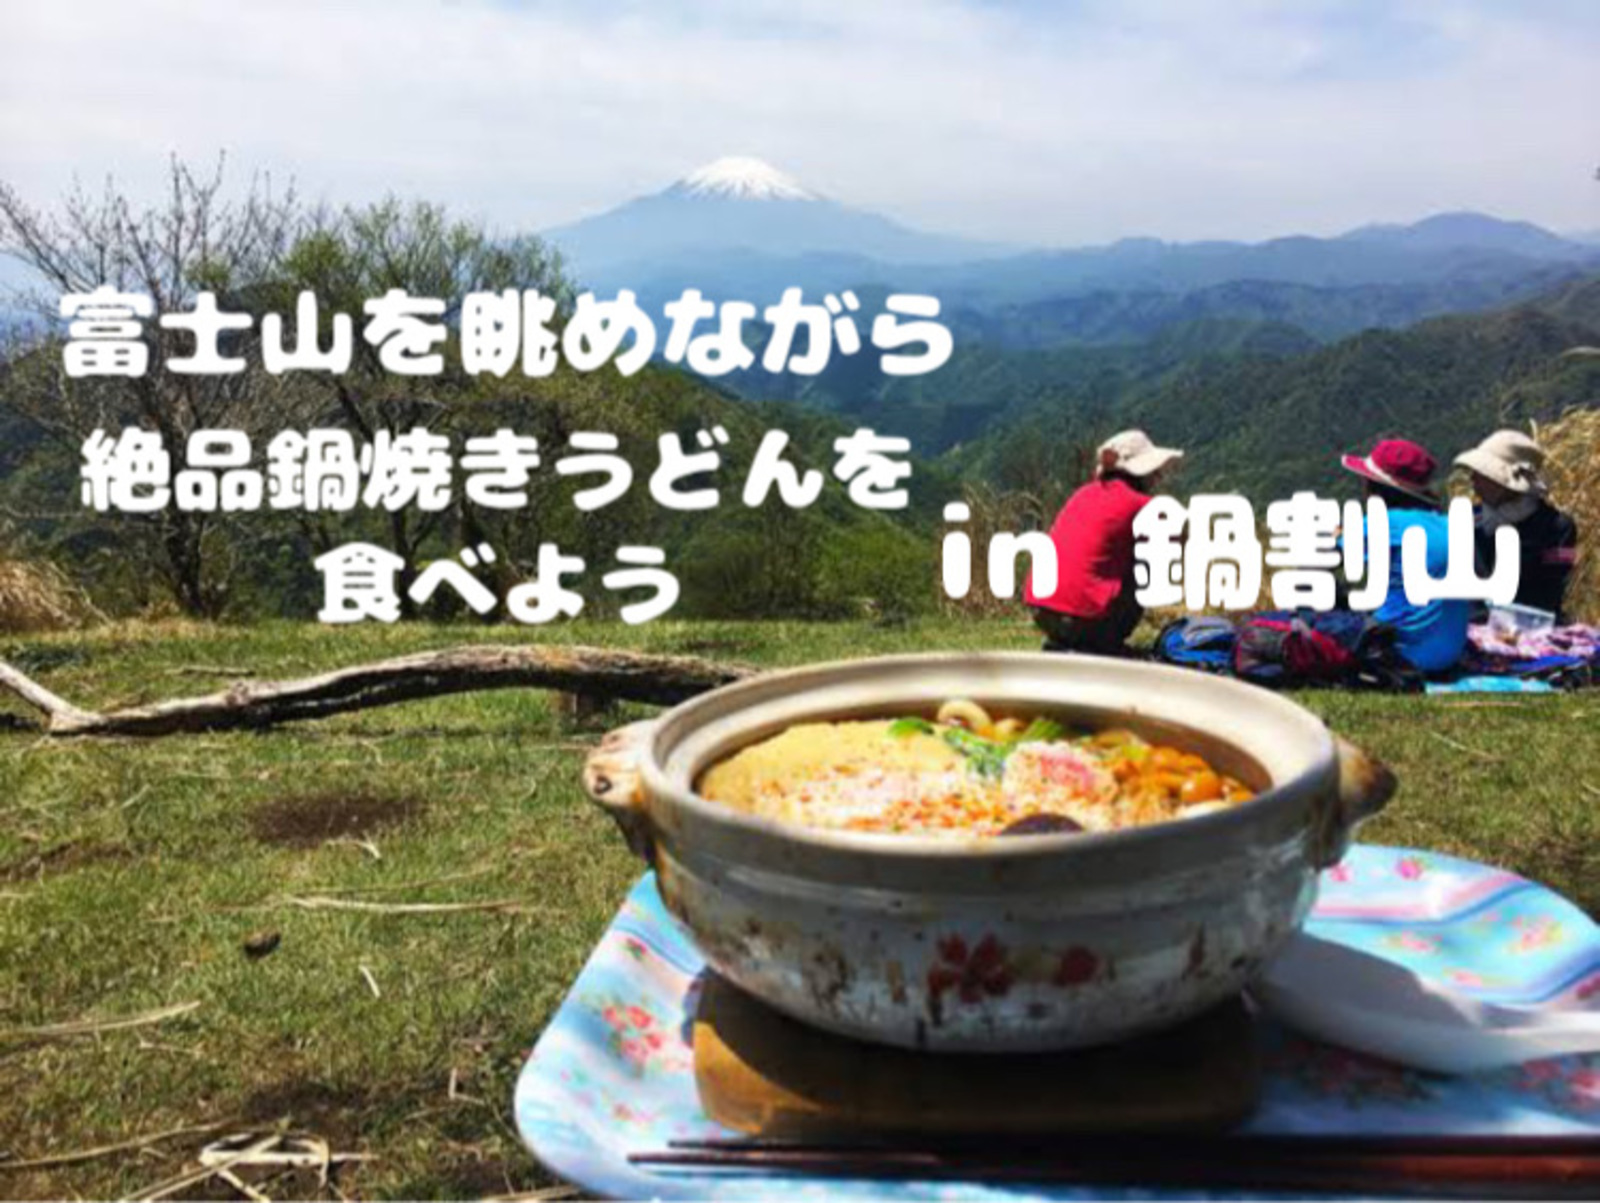 【後日登山中の思い出動画プレゼント🎁】富士山を眺めながら絶品鍋焼きうどんを食べて一生の思い出を作ろう◥█̆̈◤∥